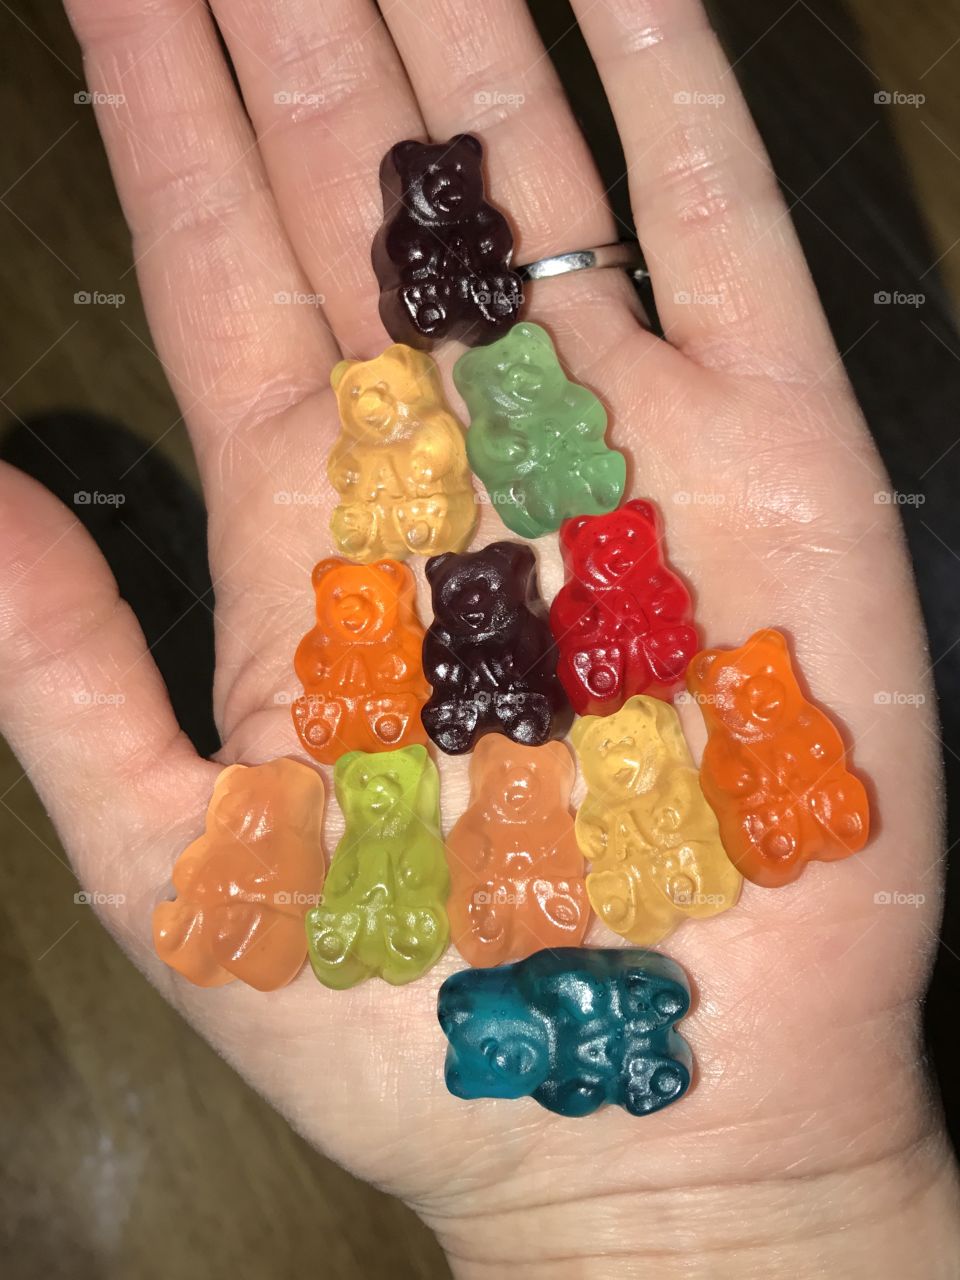 Holding gummy bears